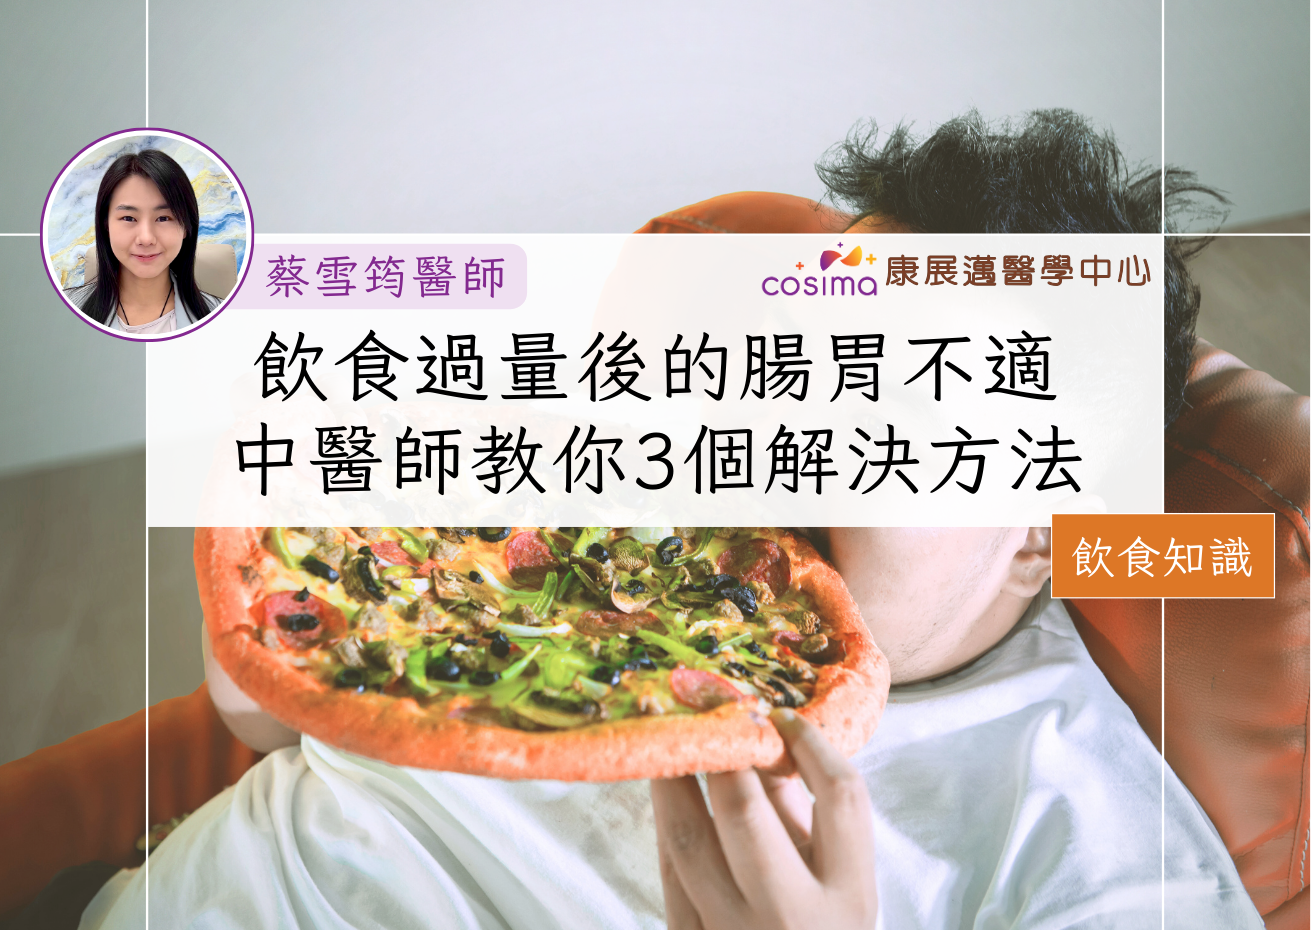 女中醫師香港 飲食過量導致腸胃不適